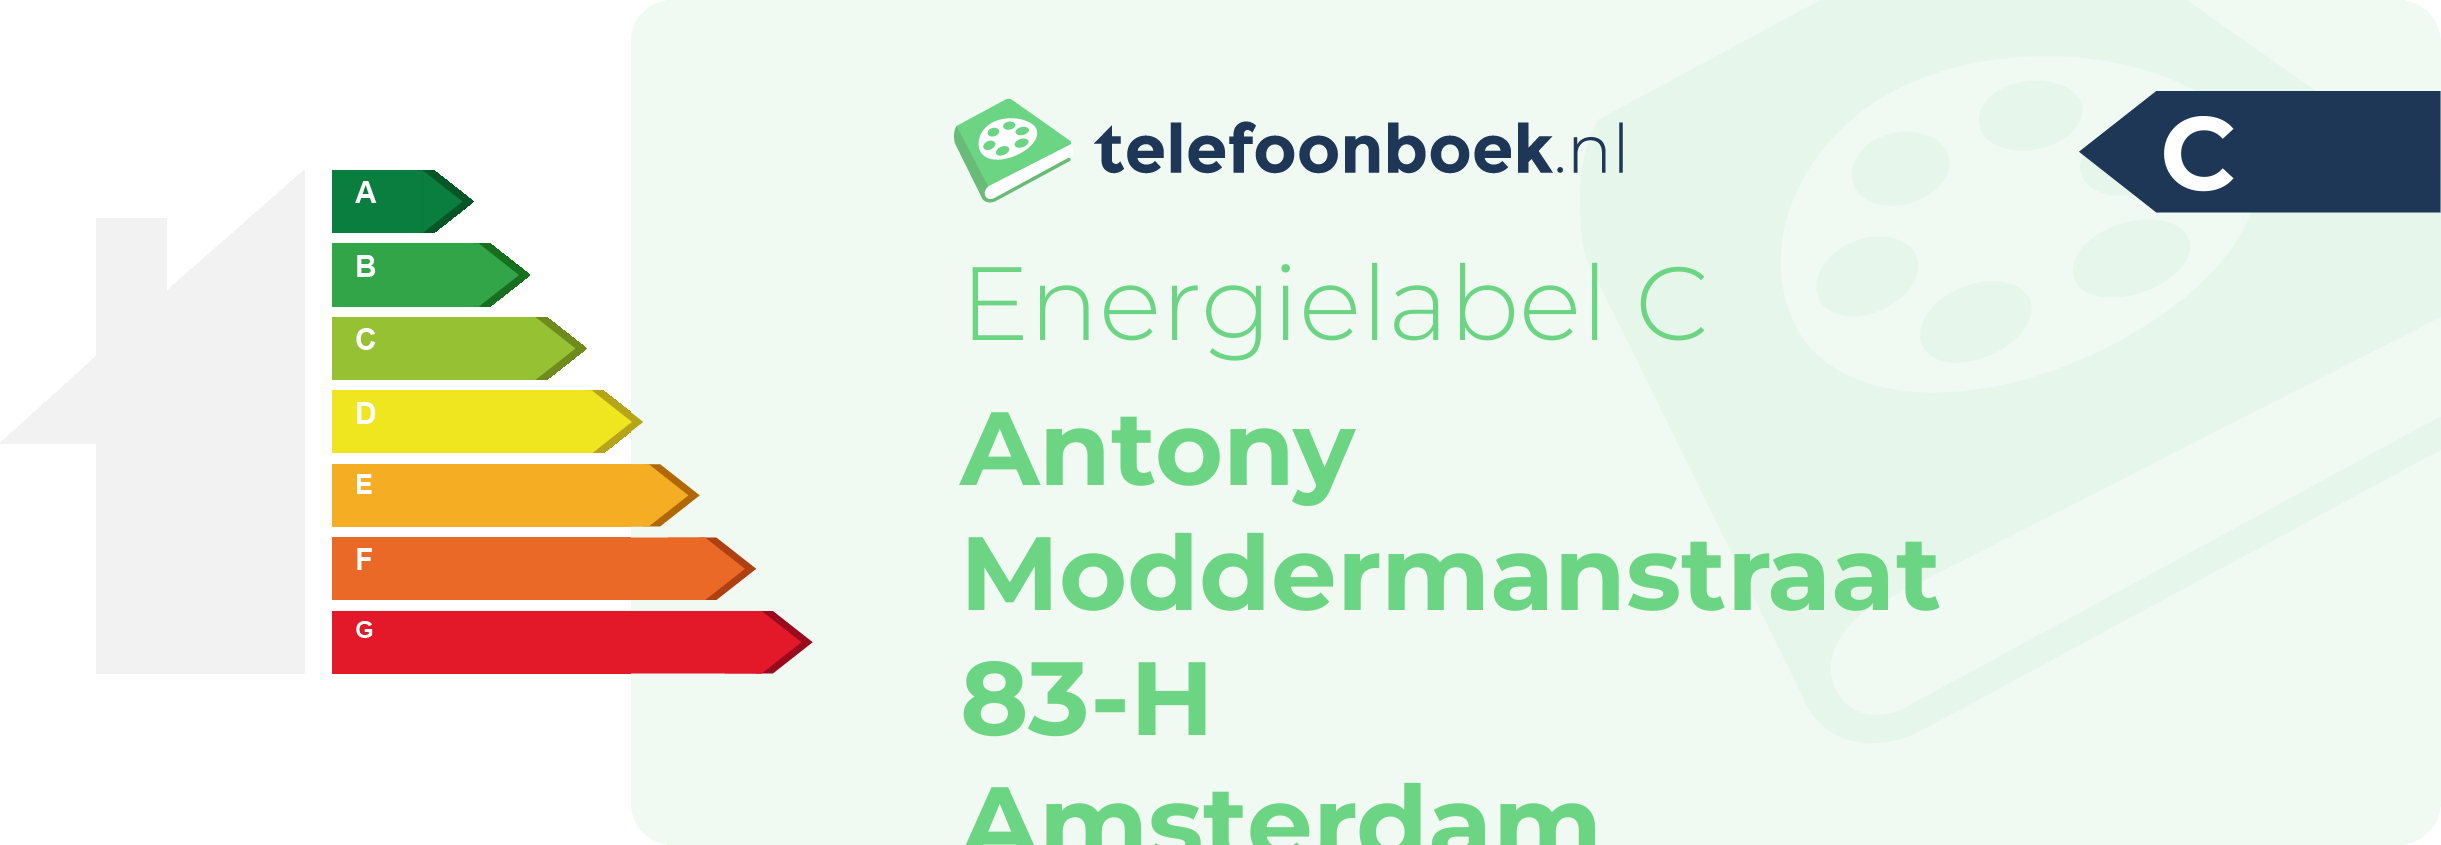 Energielabel Antony Moddermanstraat 83-H Amsterdam